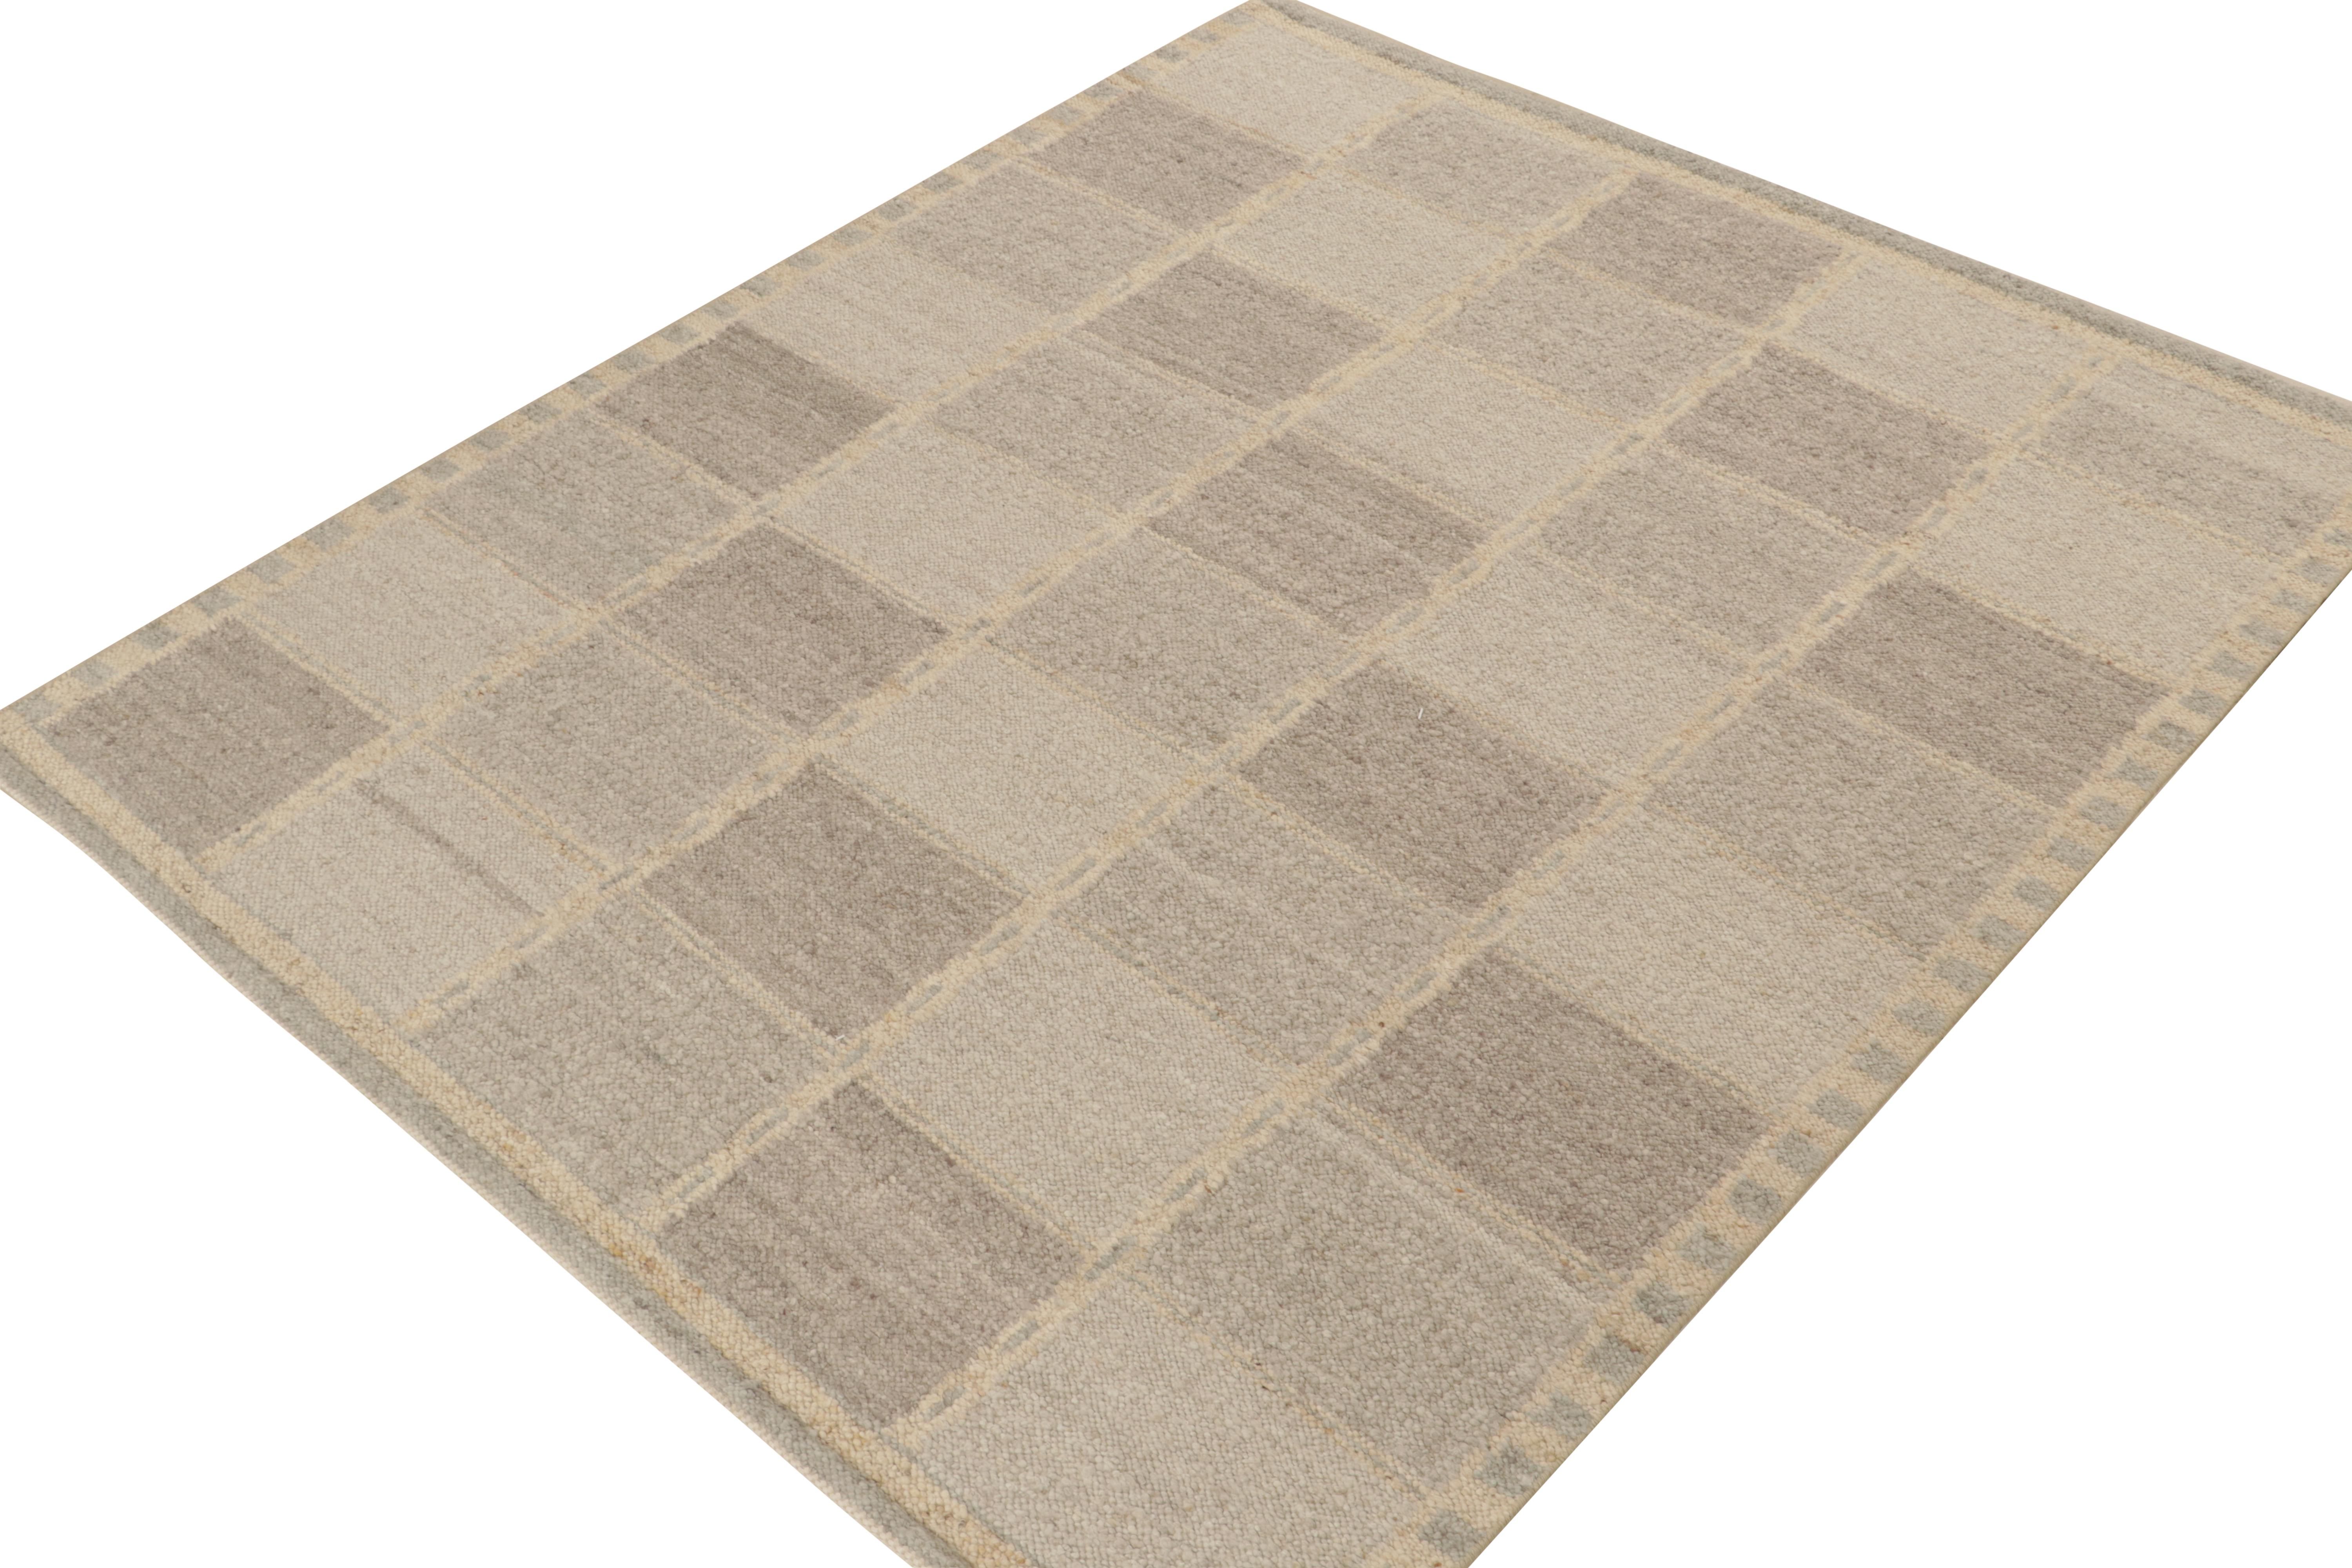 Ein eleganter 8x11 Kelim-Teppich im schwedischen Stil aus der neuen Textur unserer preisgekrönten skandinavischen Flachgewebe-Kollektion. Handgewebt aus Wolle und Baumwolle. 

Weiter zum Design: 

Unser Flachgewebe 